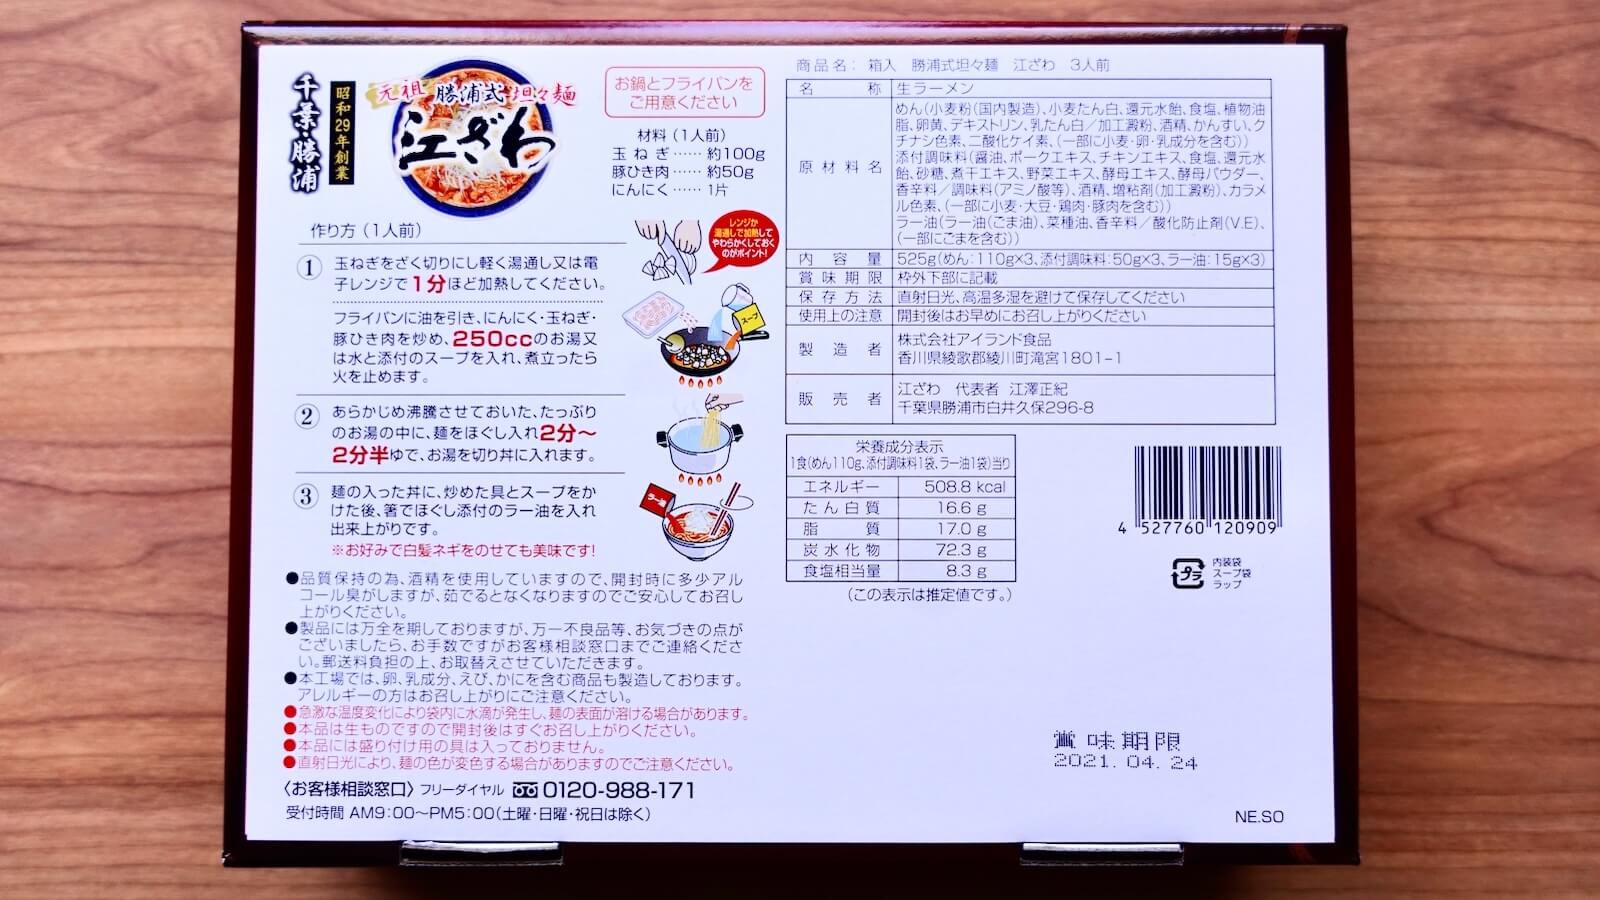 Katsuura Tantan Noodles Ezawa Instant Ramen Recipe Precautions